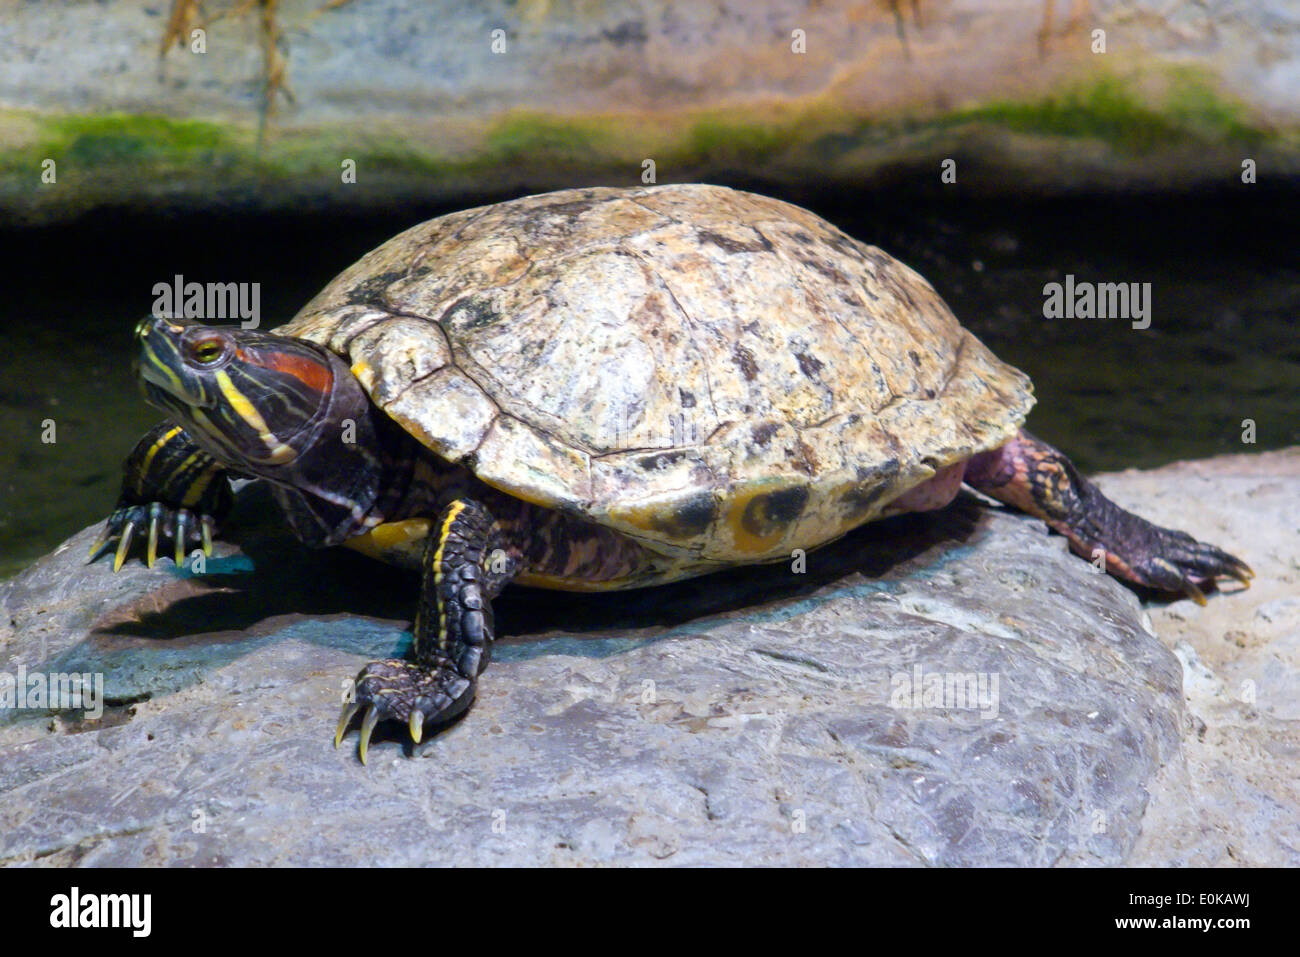 Florida Cooter Schildkröte (Halbinsel Cooter) - Floridana peninsularis Stockfoto